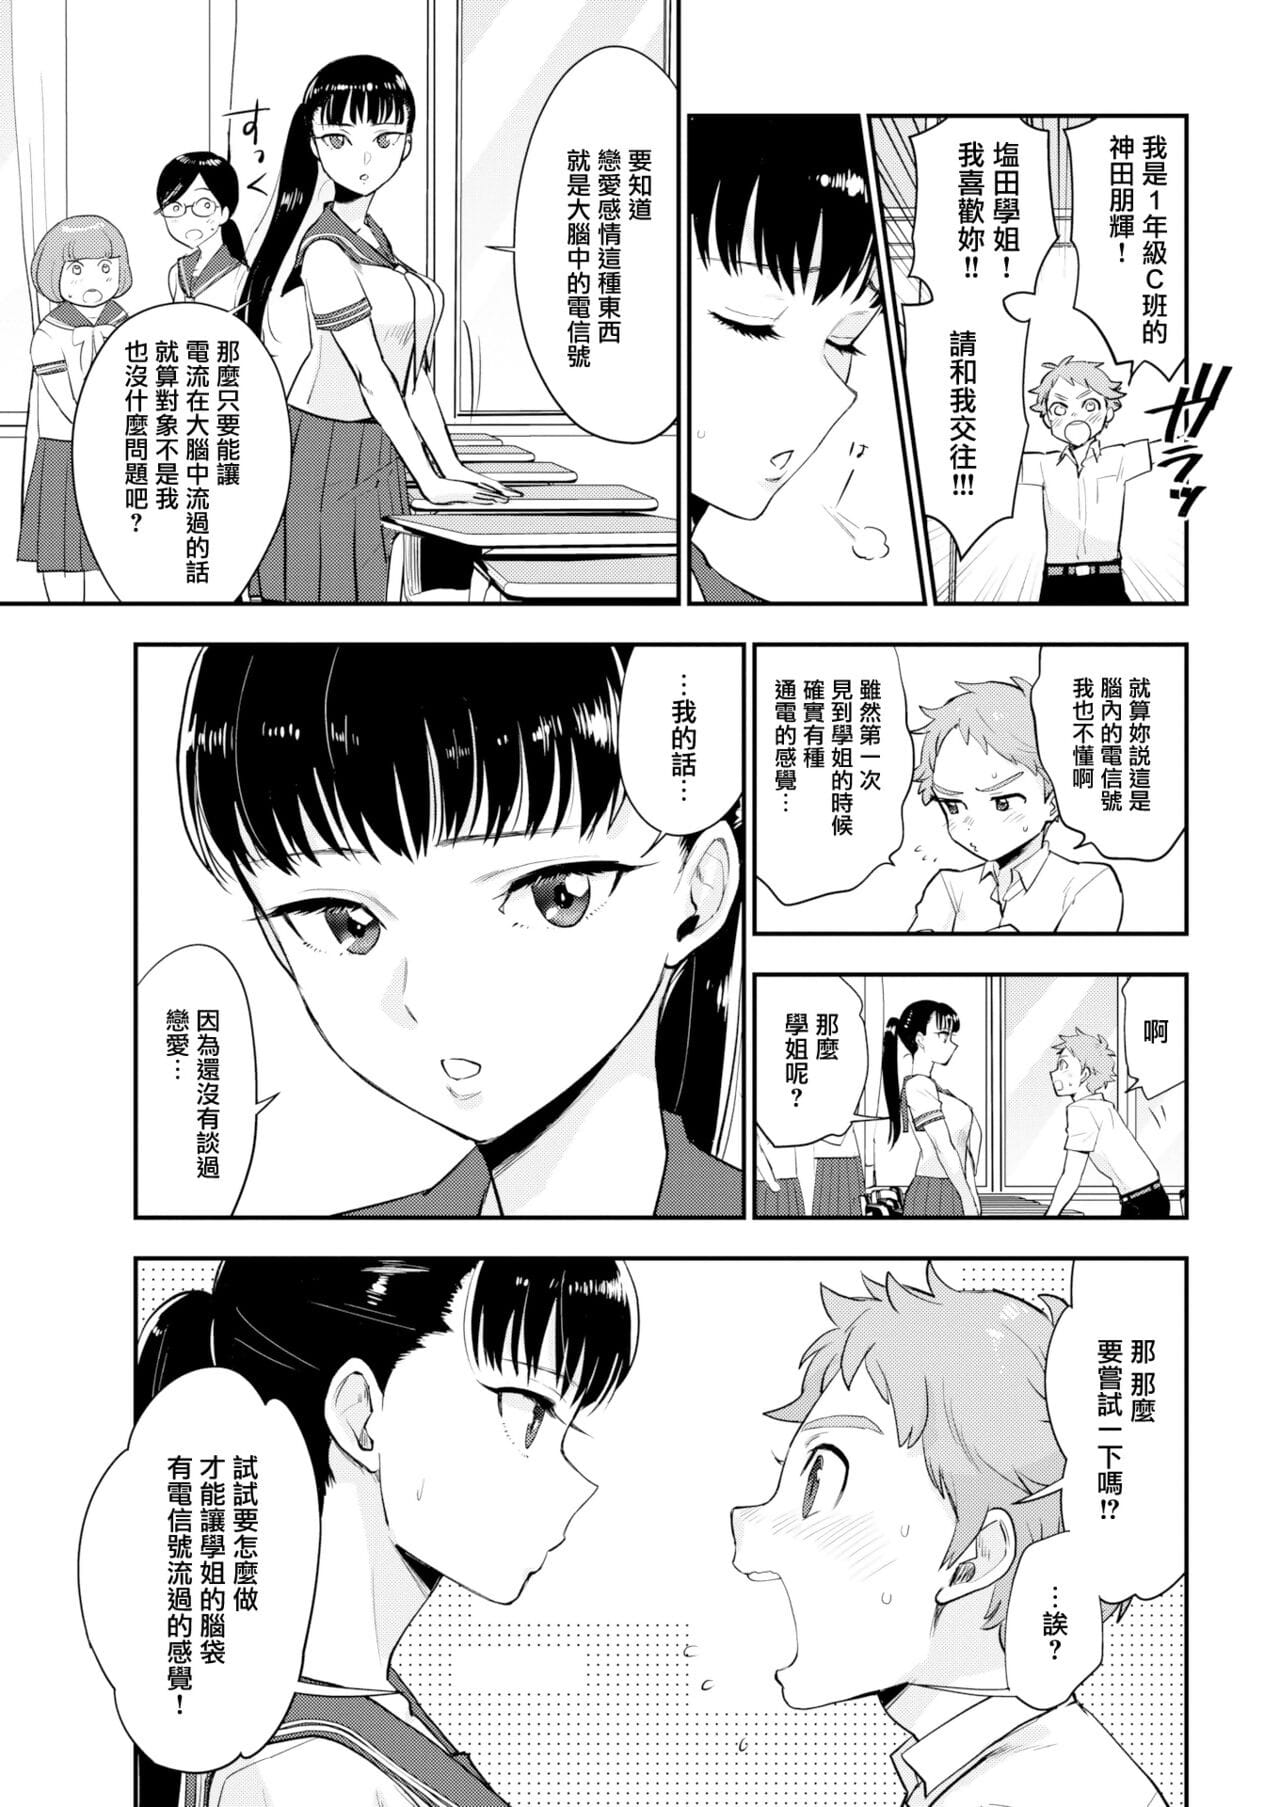 Shiota-senpai wa Shiotaiou page 1